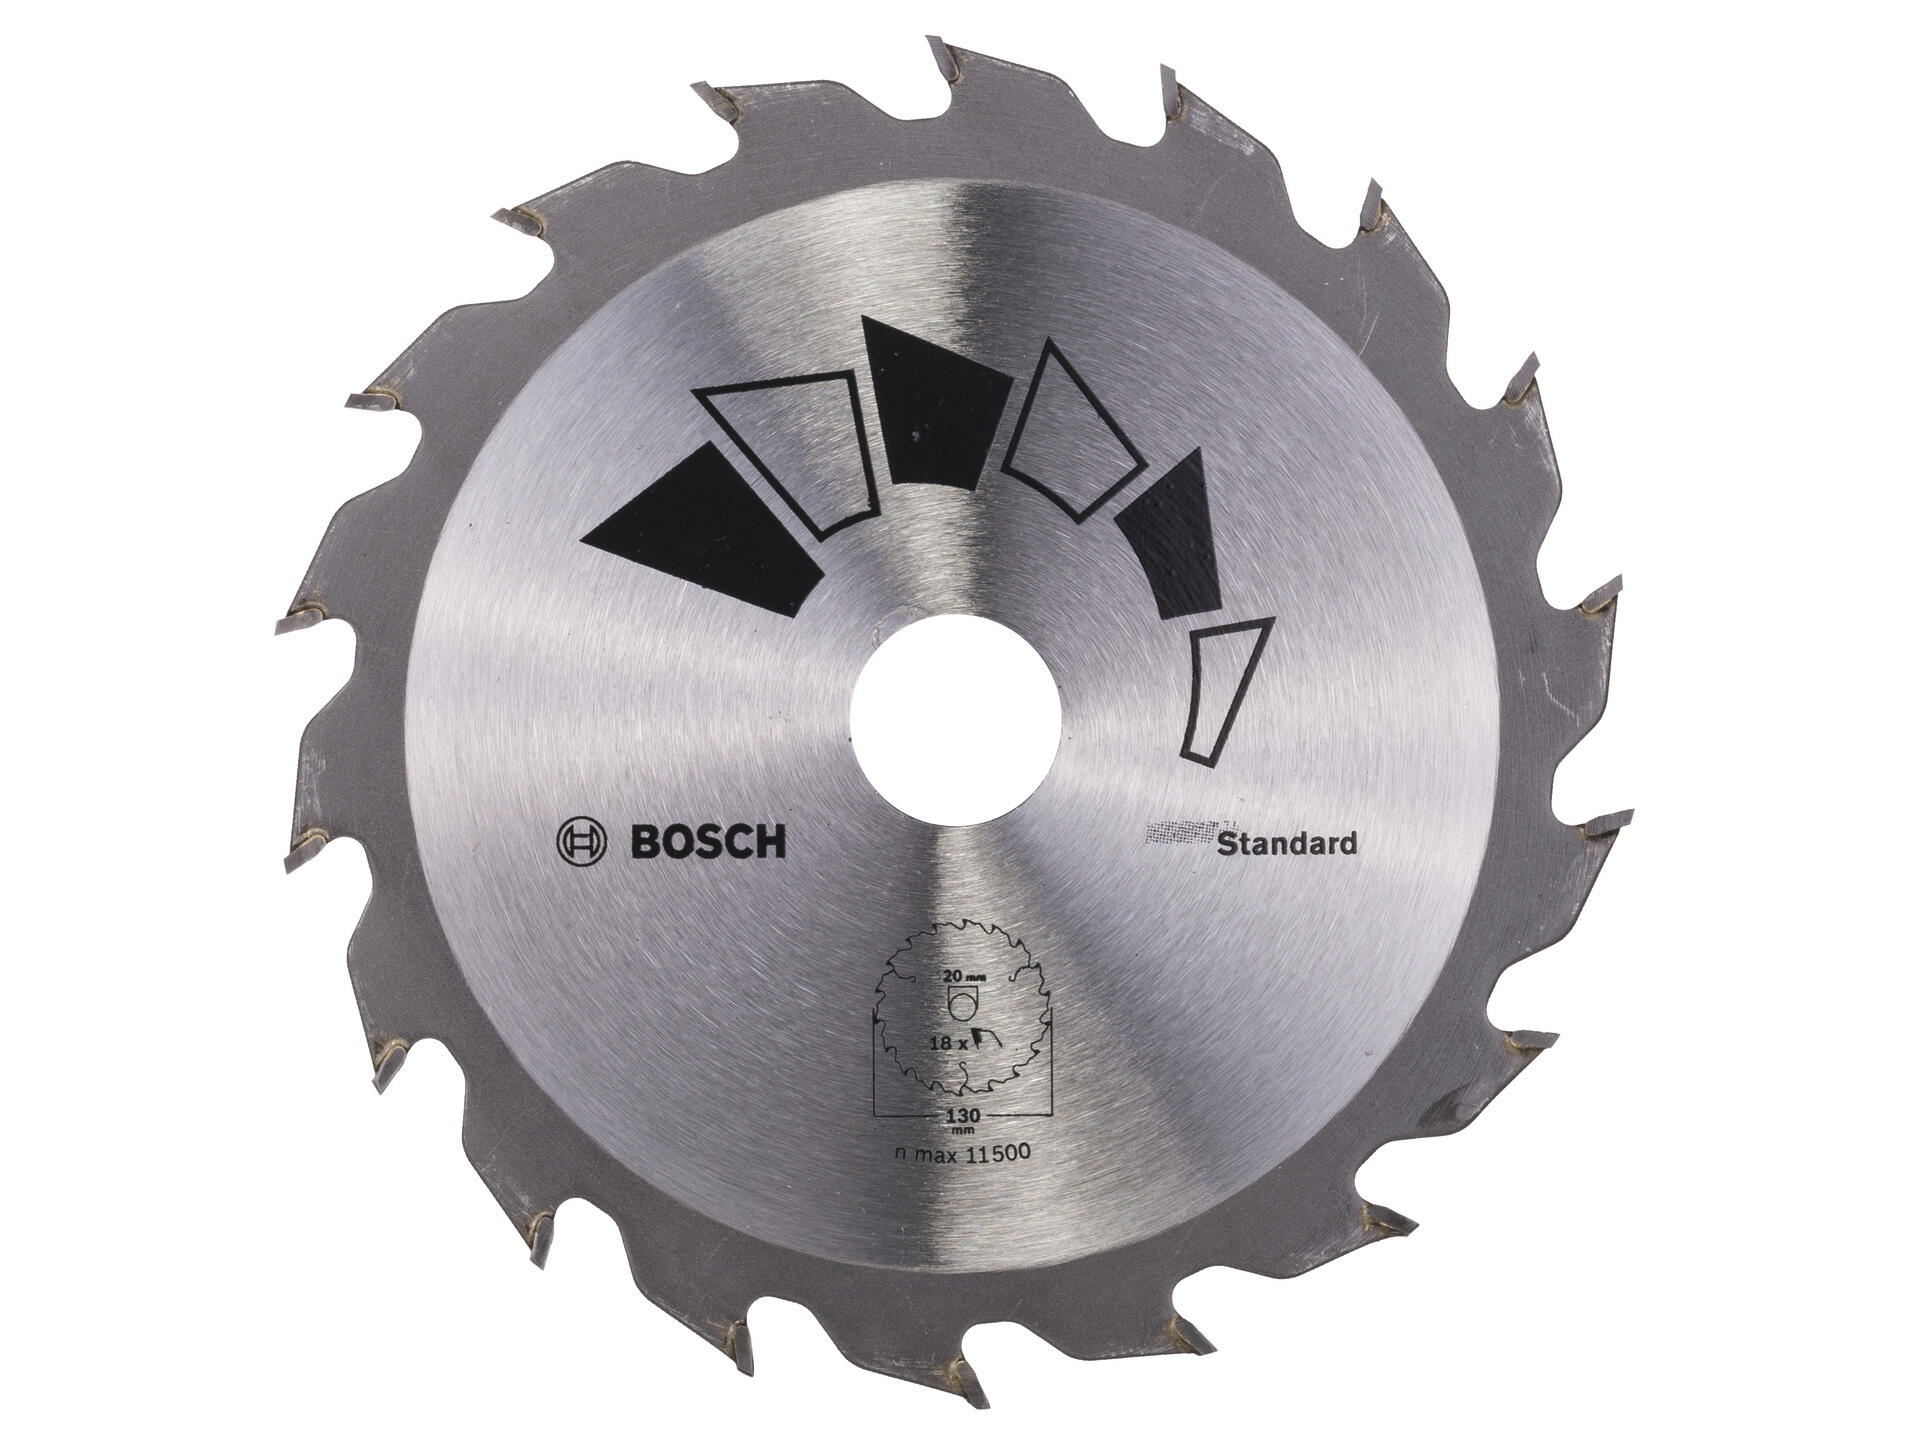 Bosch Standard cirkelzaagblad 130mm 18T hout